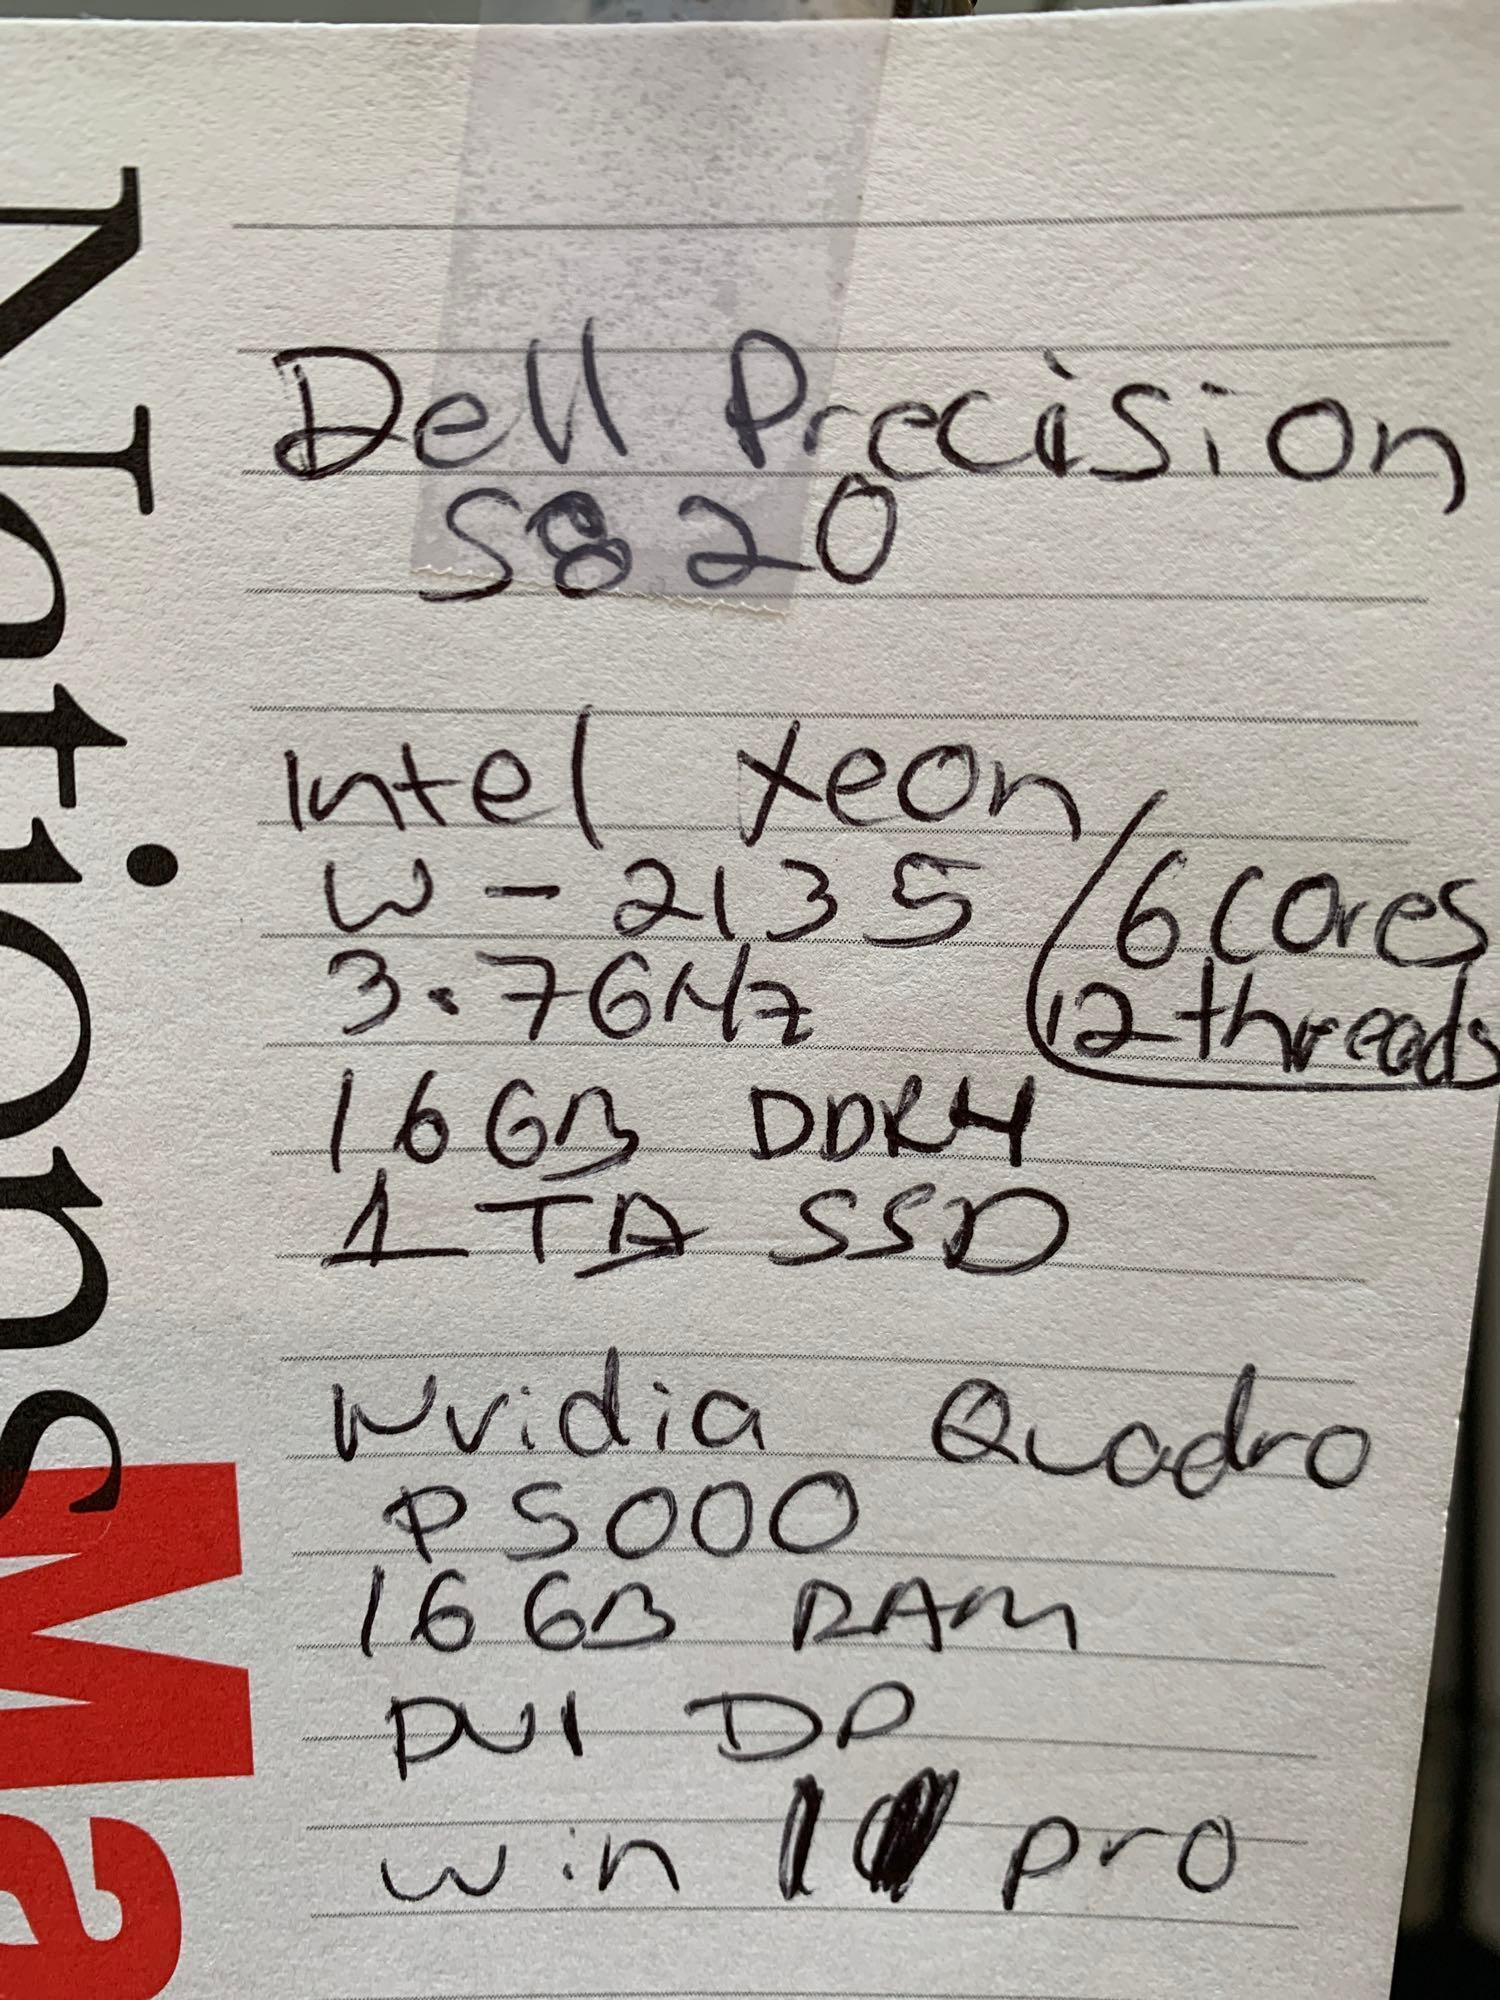 Dell Precision Workstation Intel Xeon W-2135 6 CORES 16GB DDR4 1TB SSD Quadro P5000 Win 11